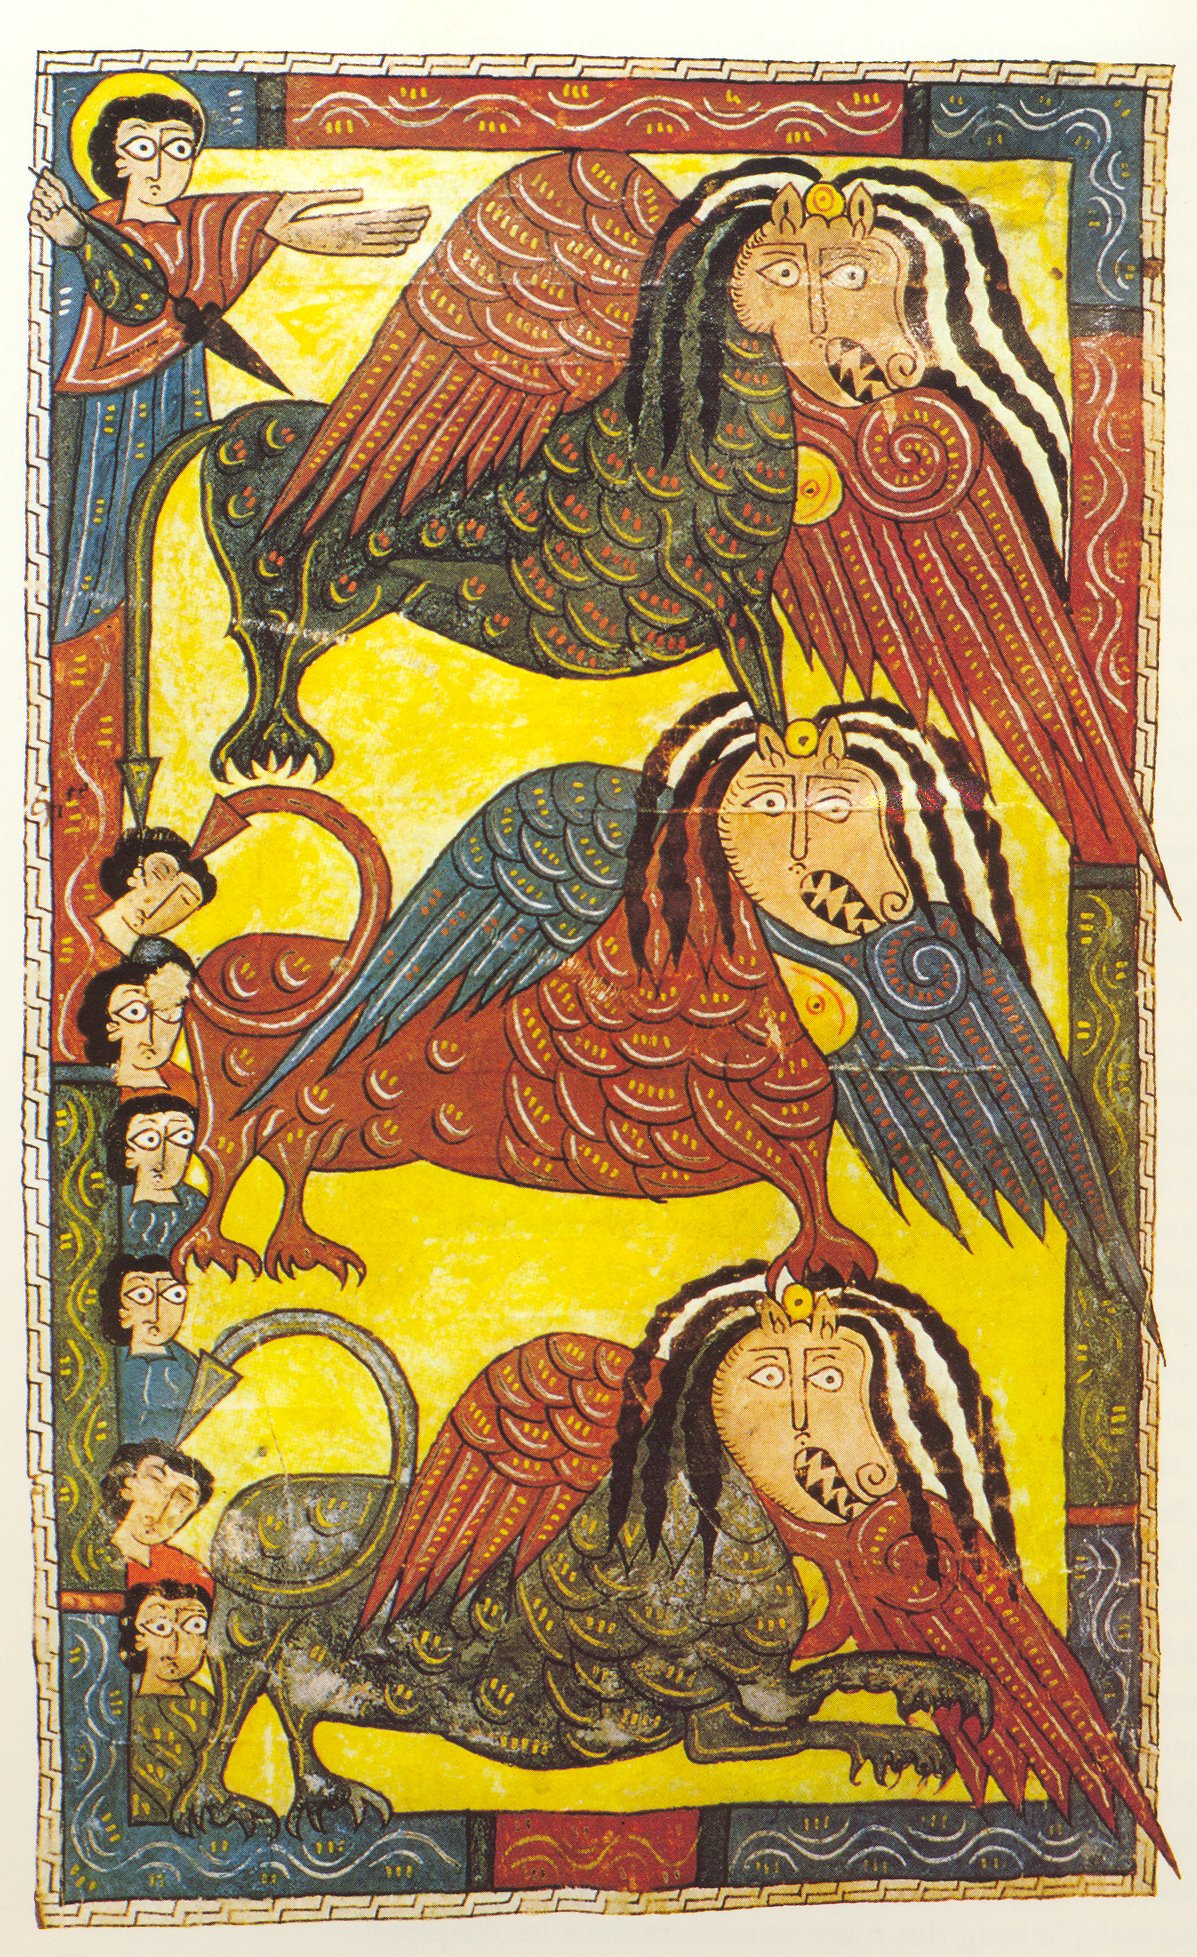 Beatus de l’Escorial – Les Bêtes infernales sortent de l’Abîme (Ap 9), folio 96v.